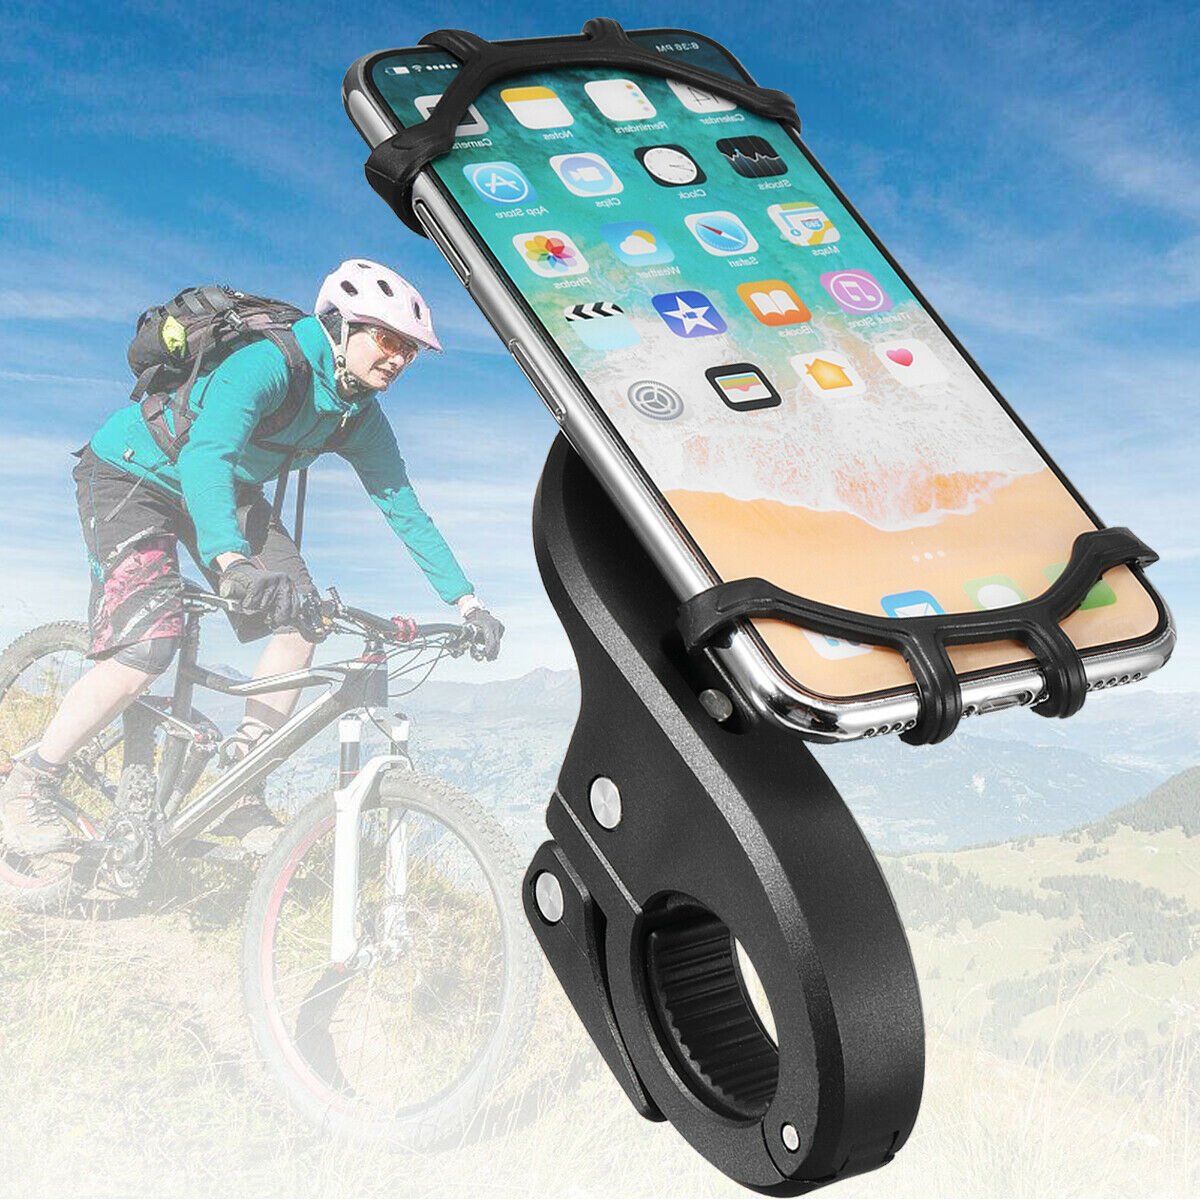 Bike holder - Universal phone